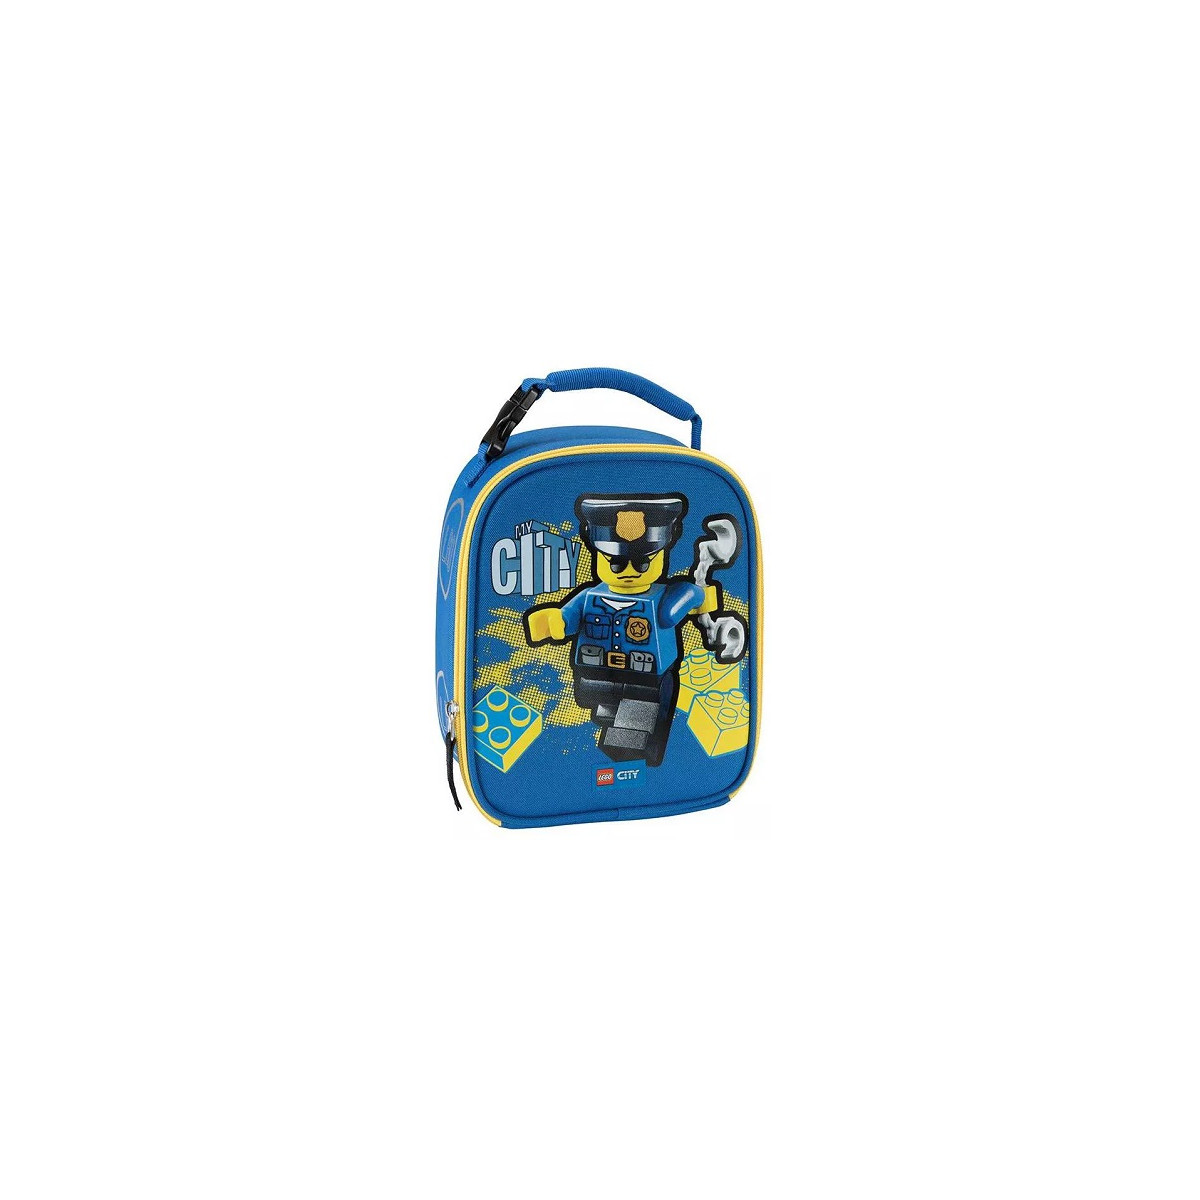 Lego LN0156 - Lunch bag City